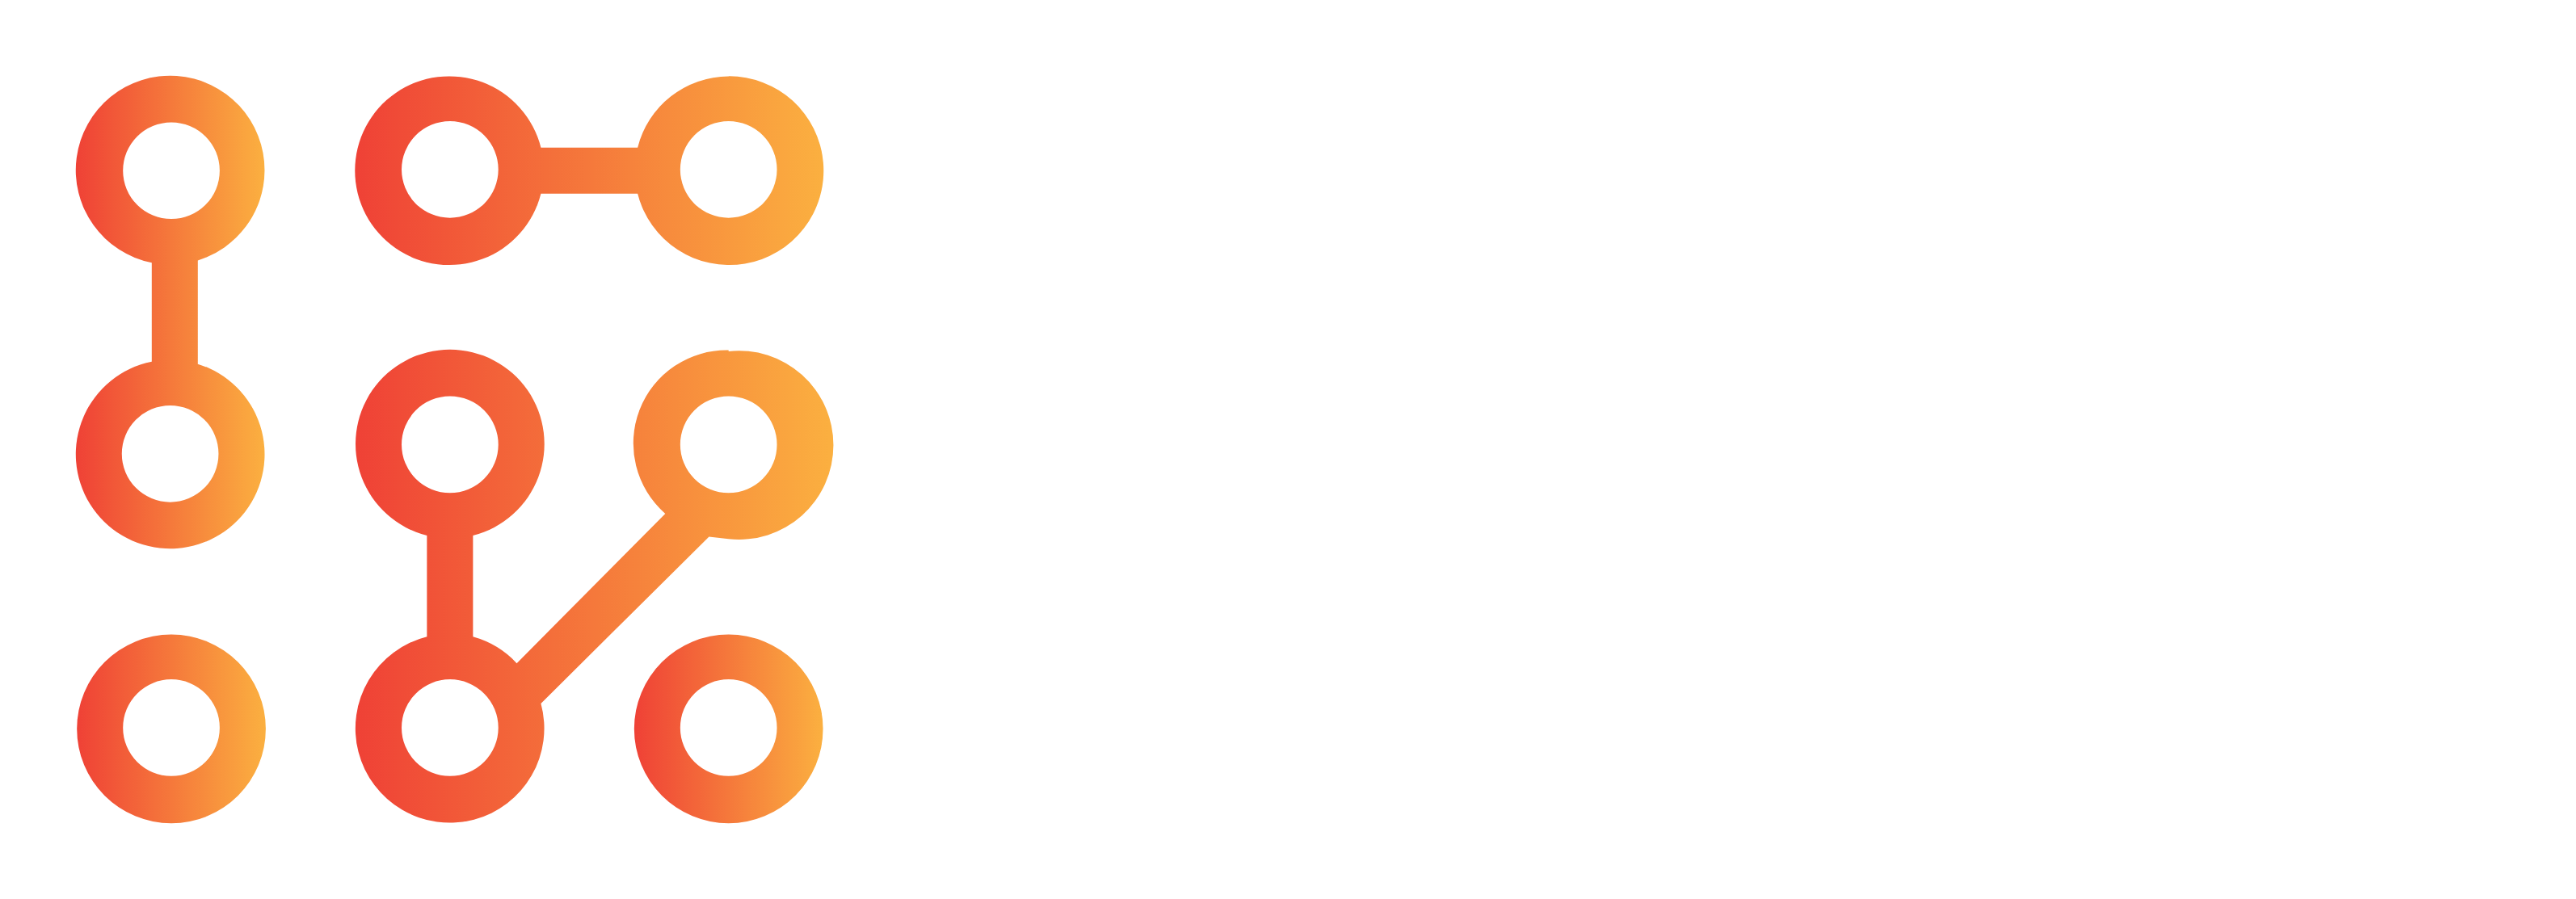 Our logo Swedish Metaverse Center